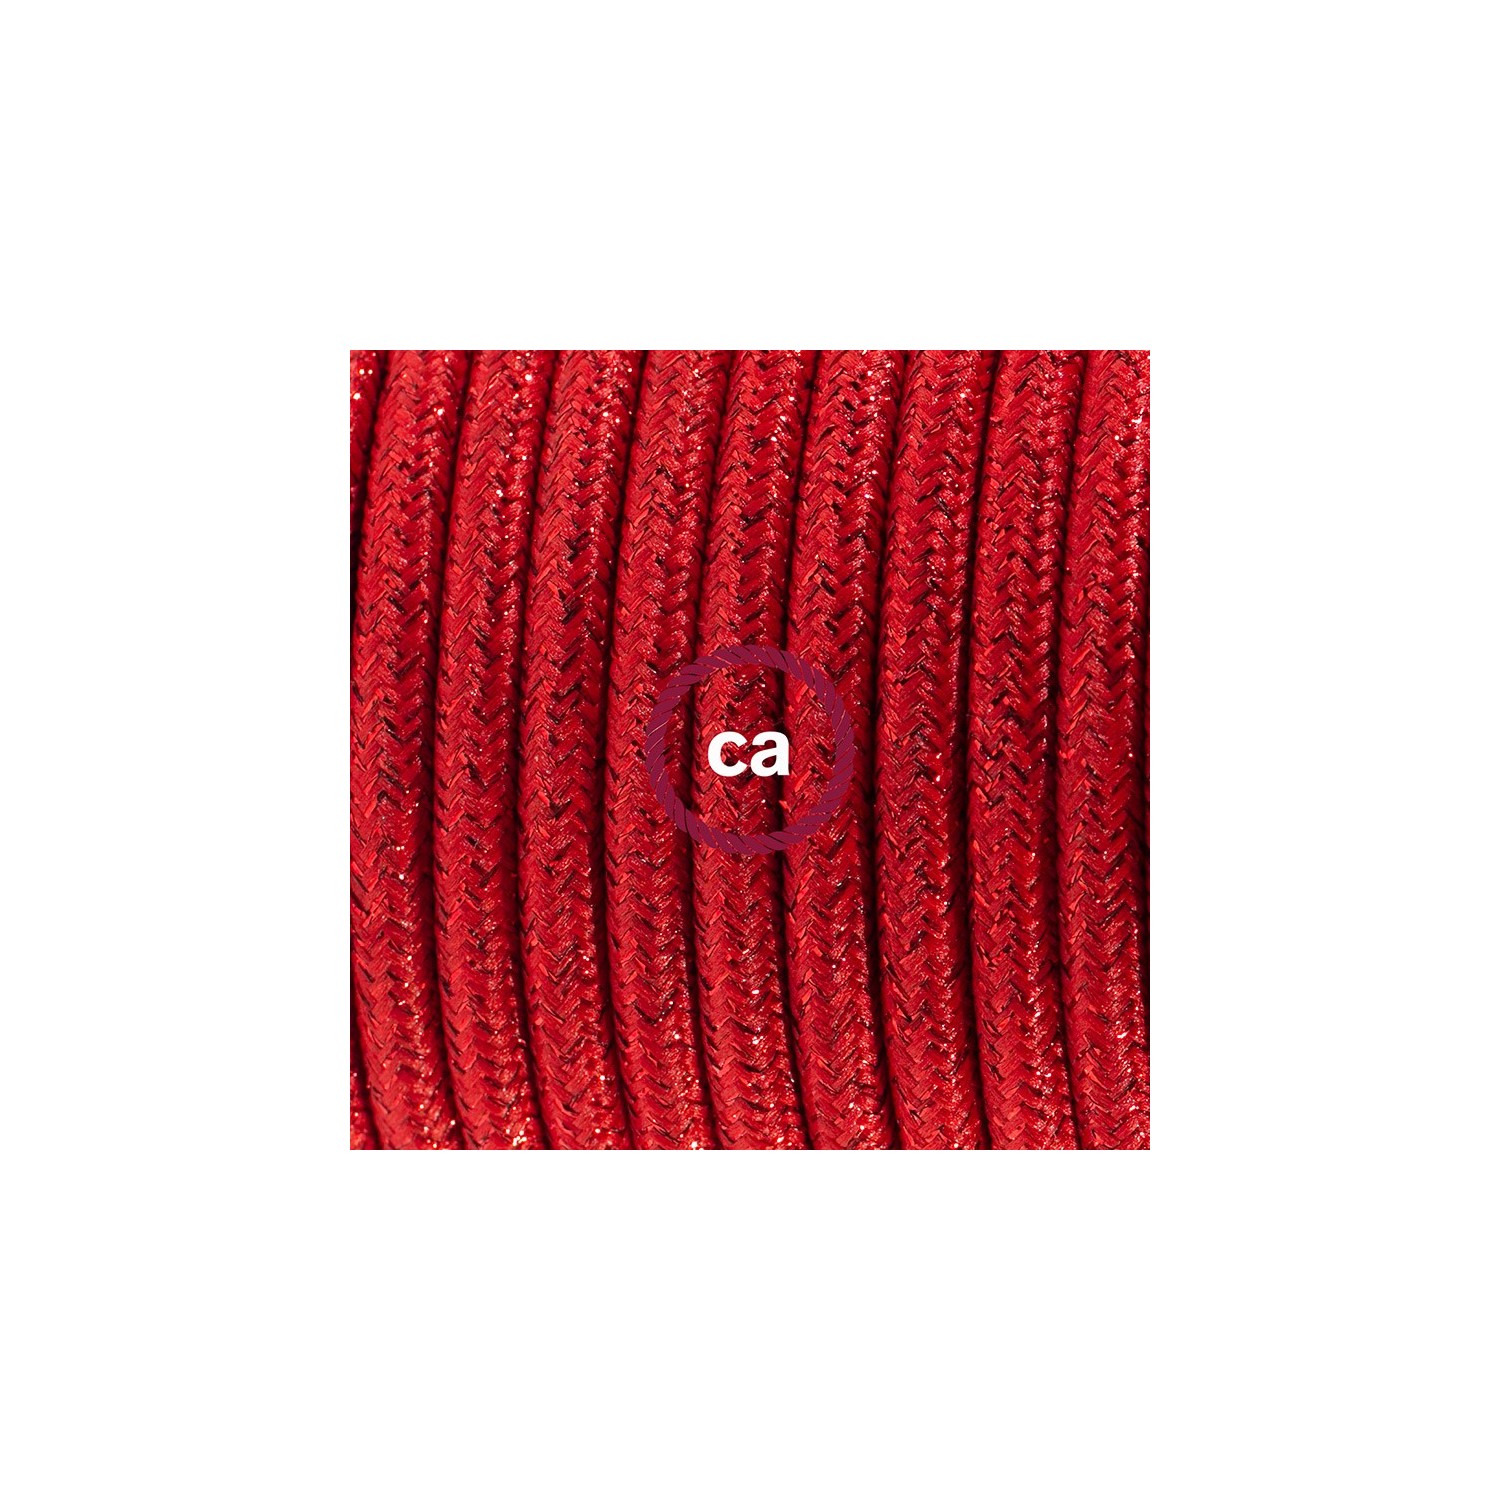 Napájací kábel pre stolnú lampu, RL09 Červený hodvábny 1,80 m. Vyberte si farbu zástrčky a vypínača.